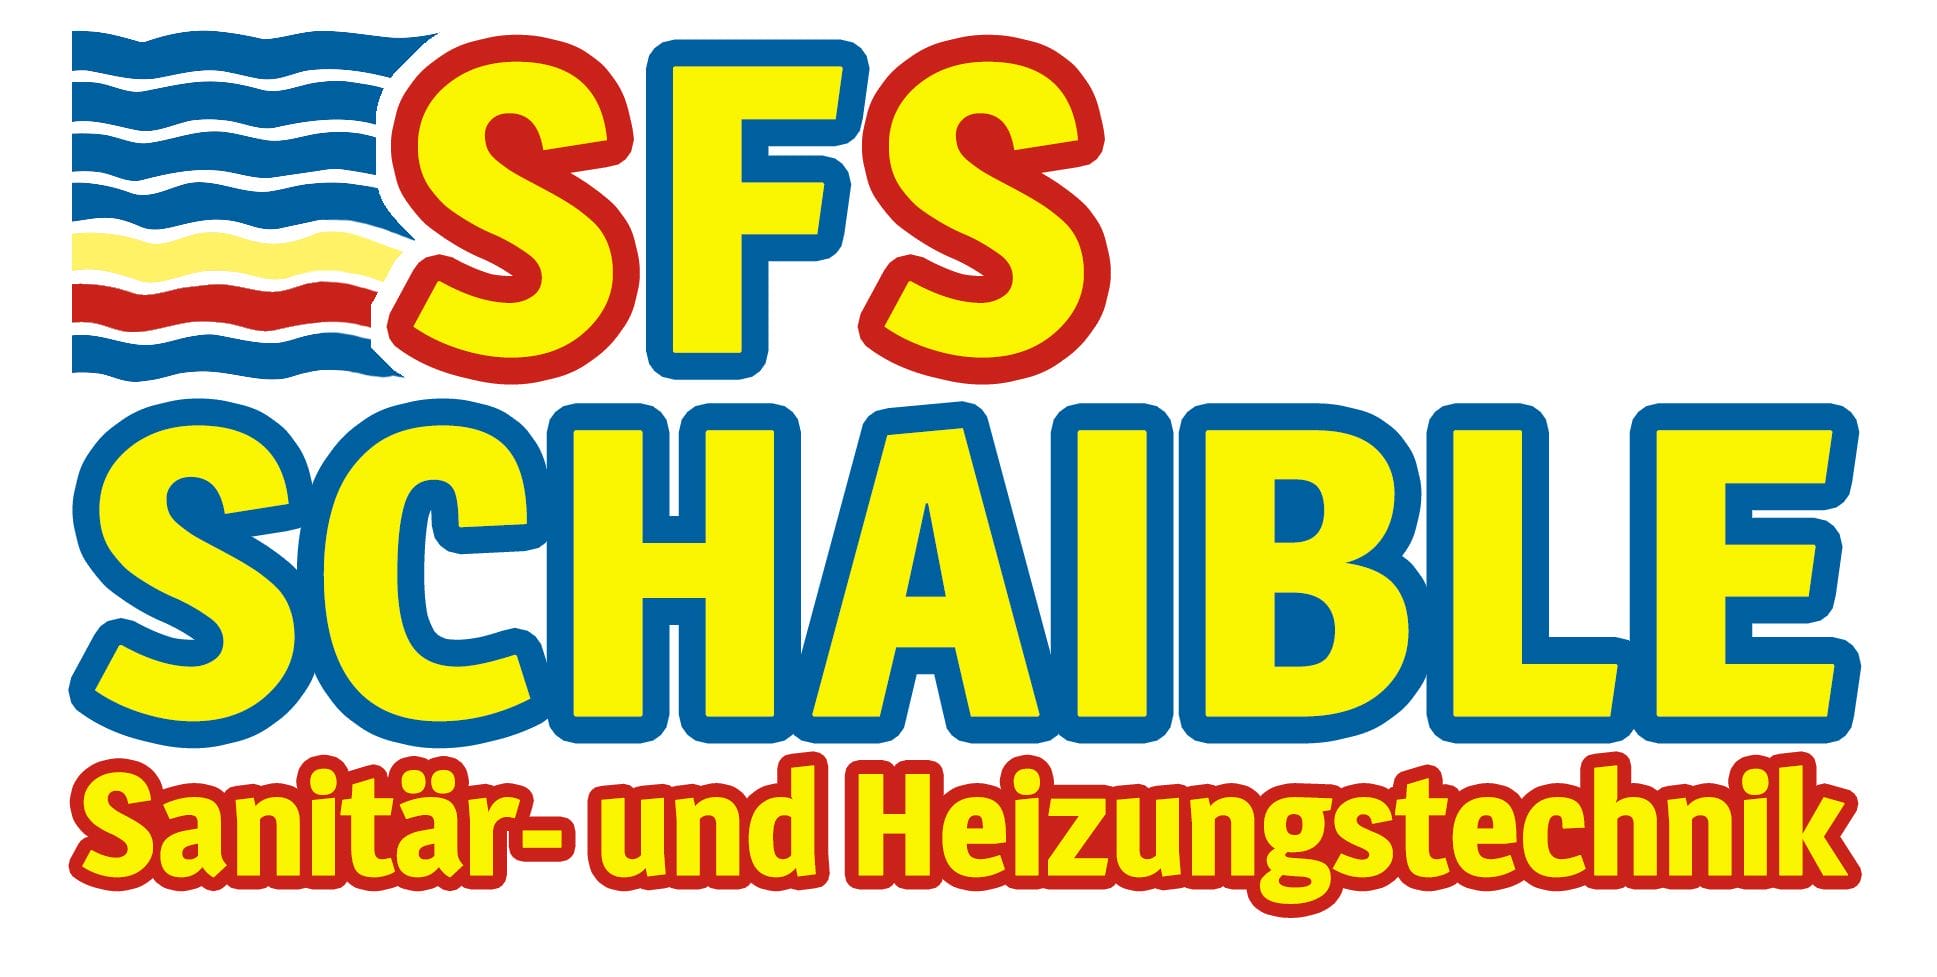 Ein Jahr SFS Schaible GmbH